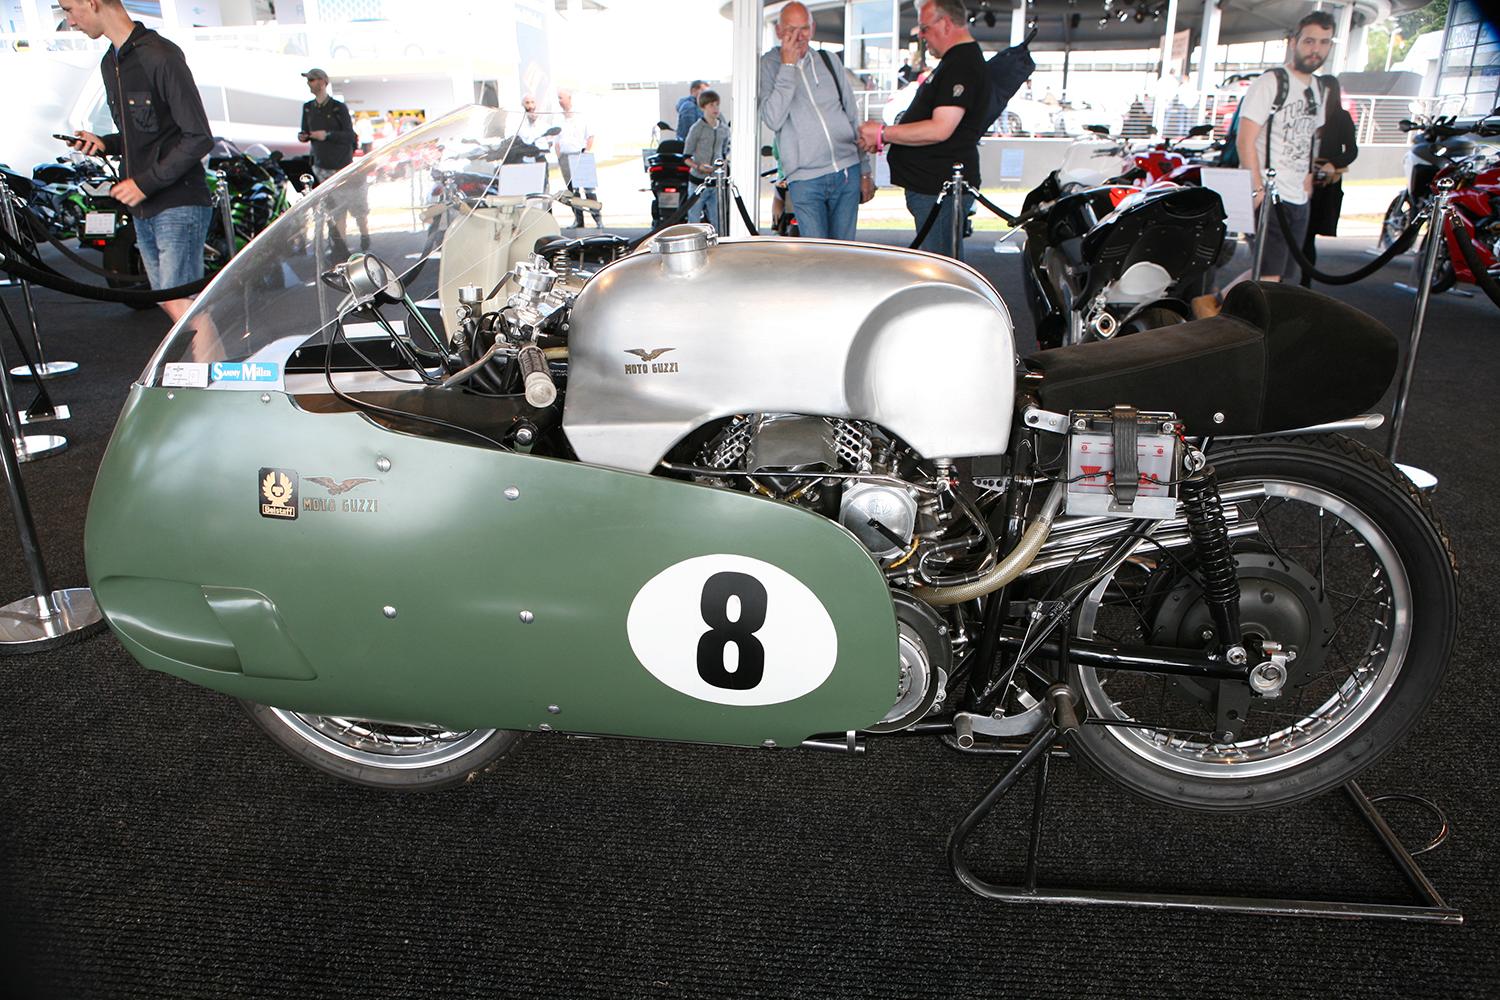 En hoj för riktiga våghalsar. Eller vad sägs om att dra på fullt med denna Moto Guzzi 500 V8 byggd 1957?